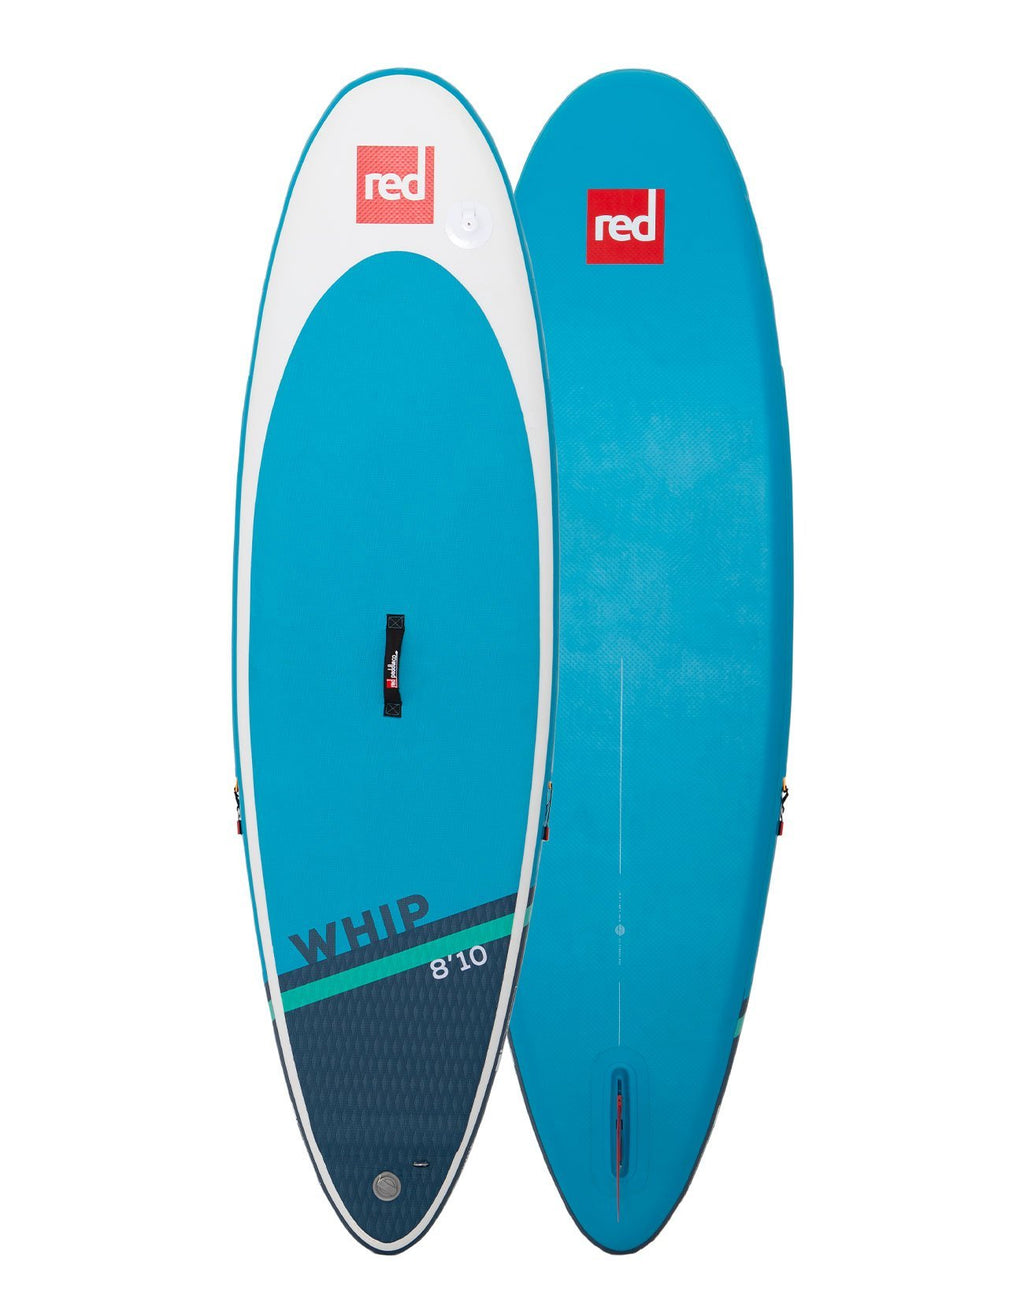 Baglæns lærken Ord Red Equipment USA | 8'10" Whip Surfing Paddle Board Package